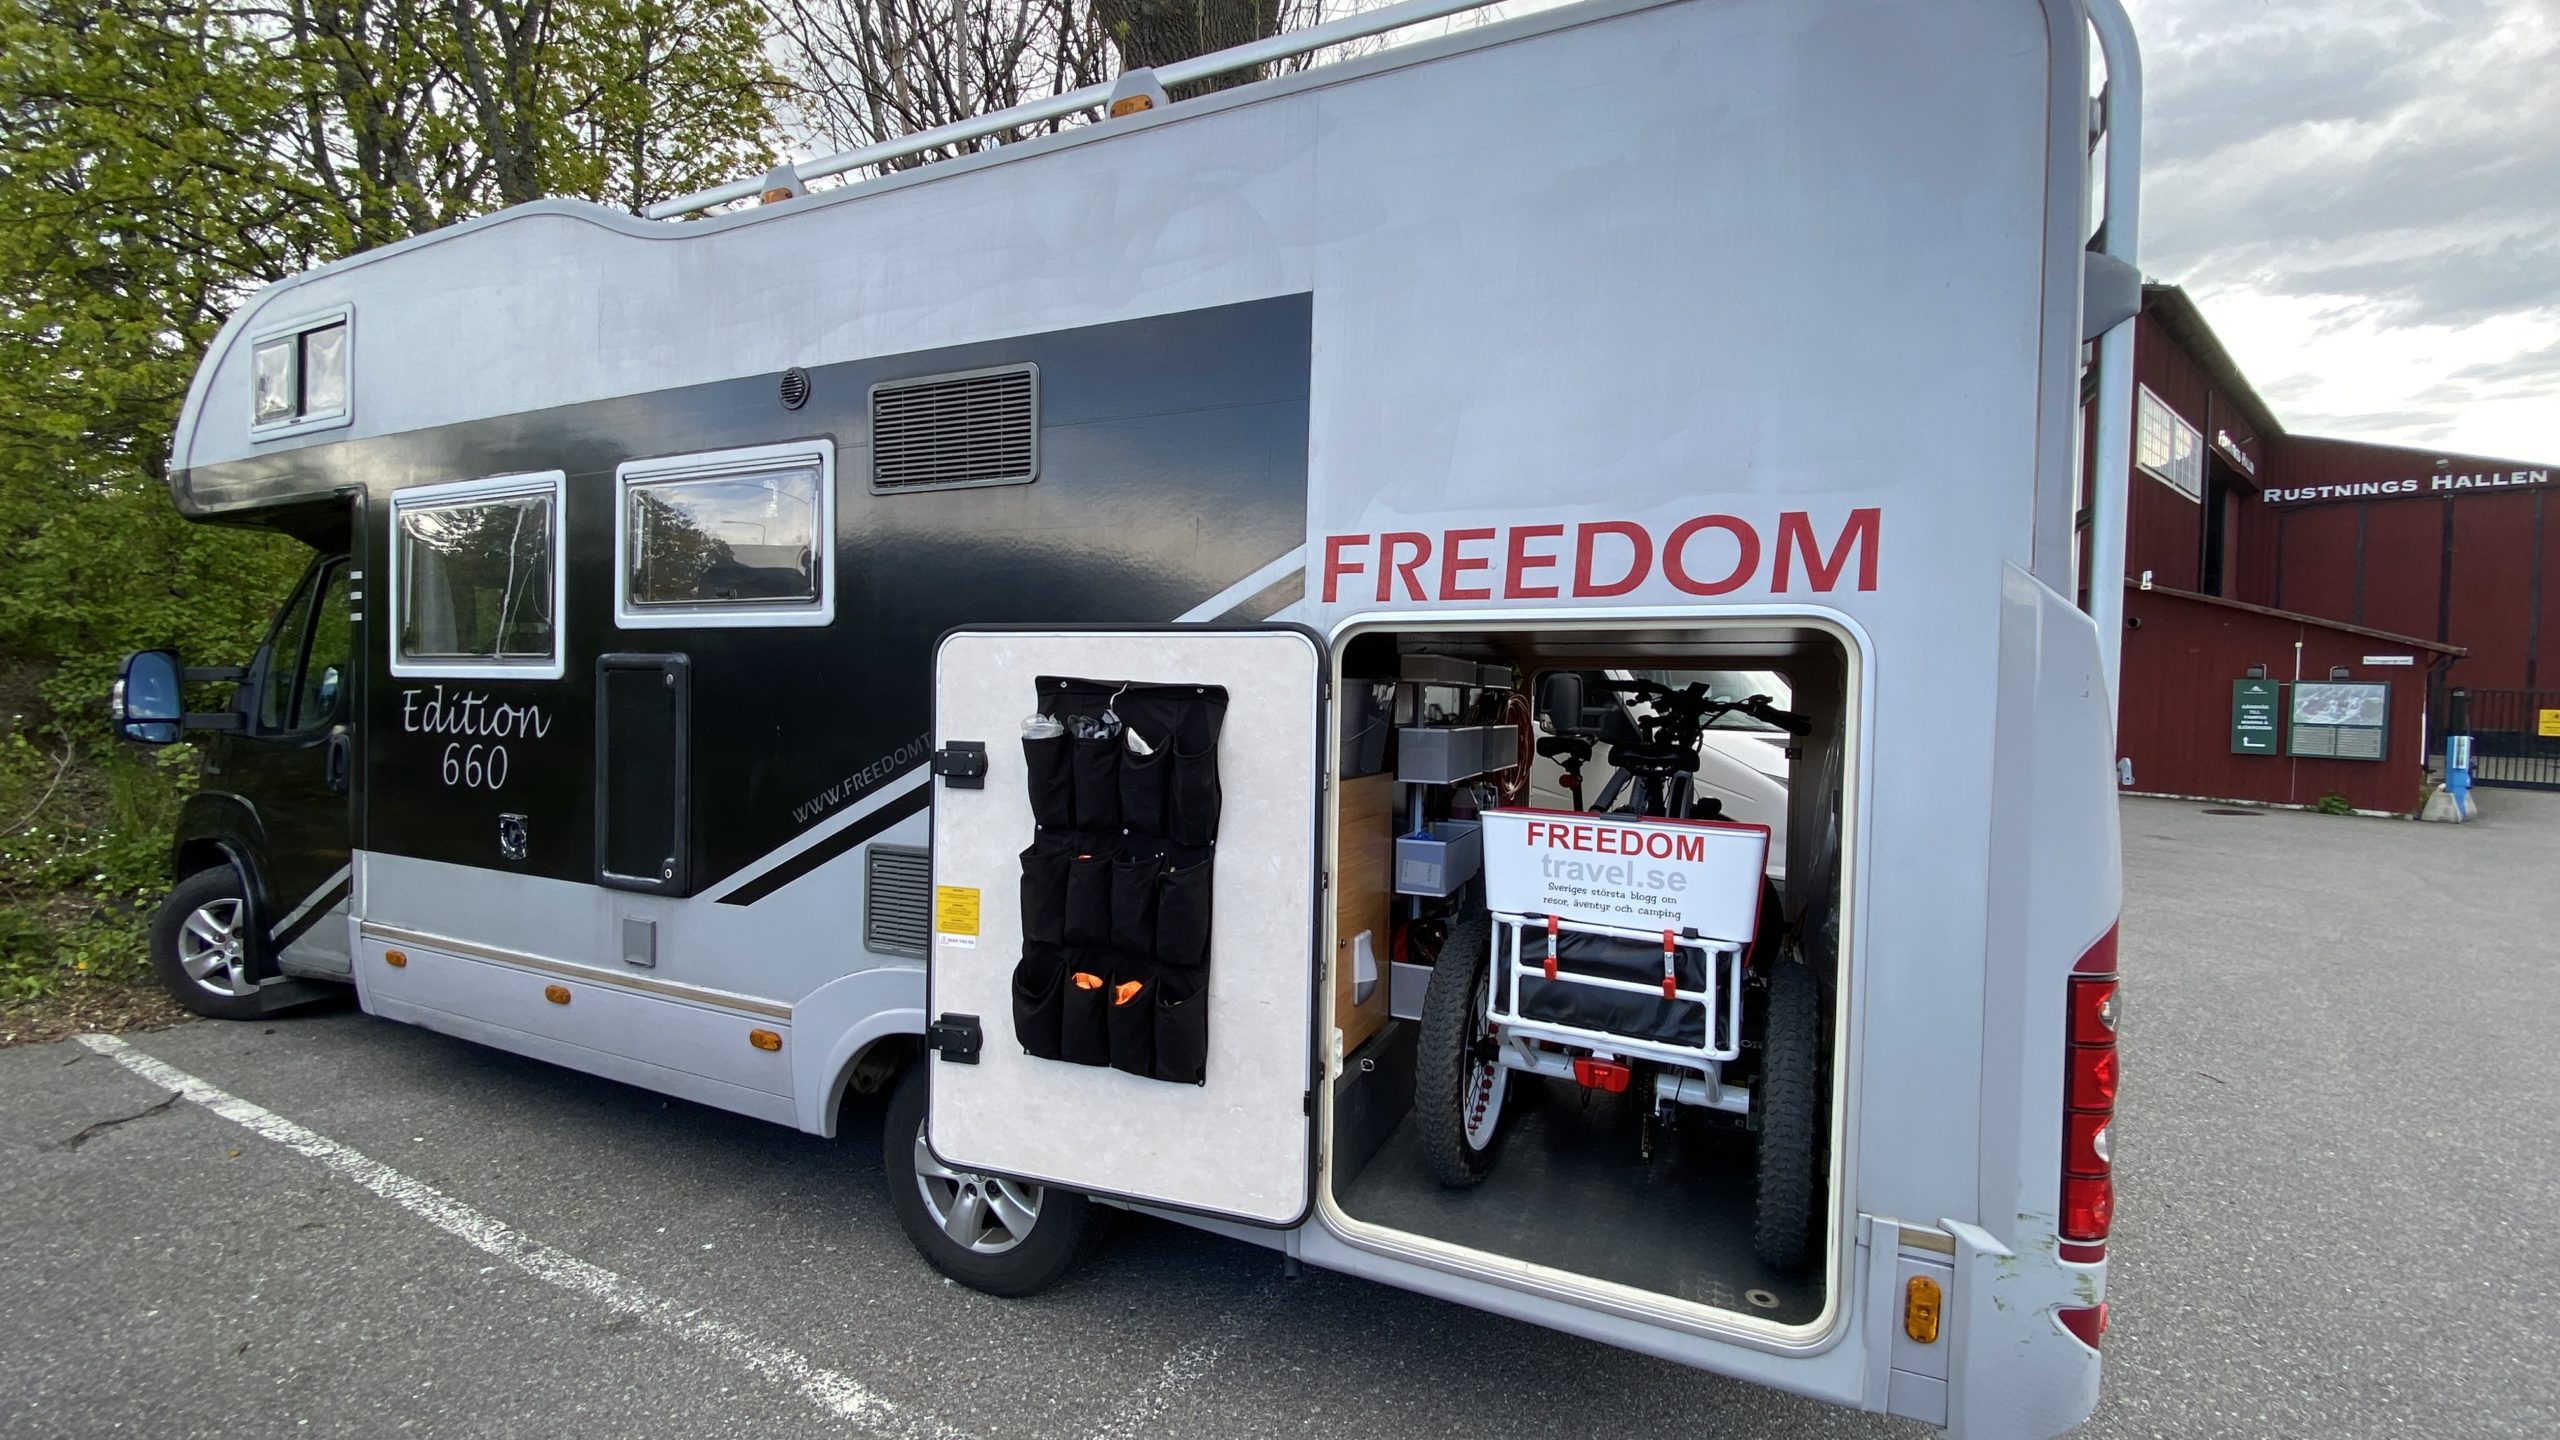 Ny inredning i husbilens garage - och plats för elcyklar | FREEDOMtravel